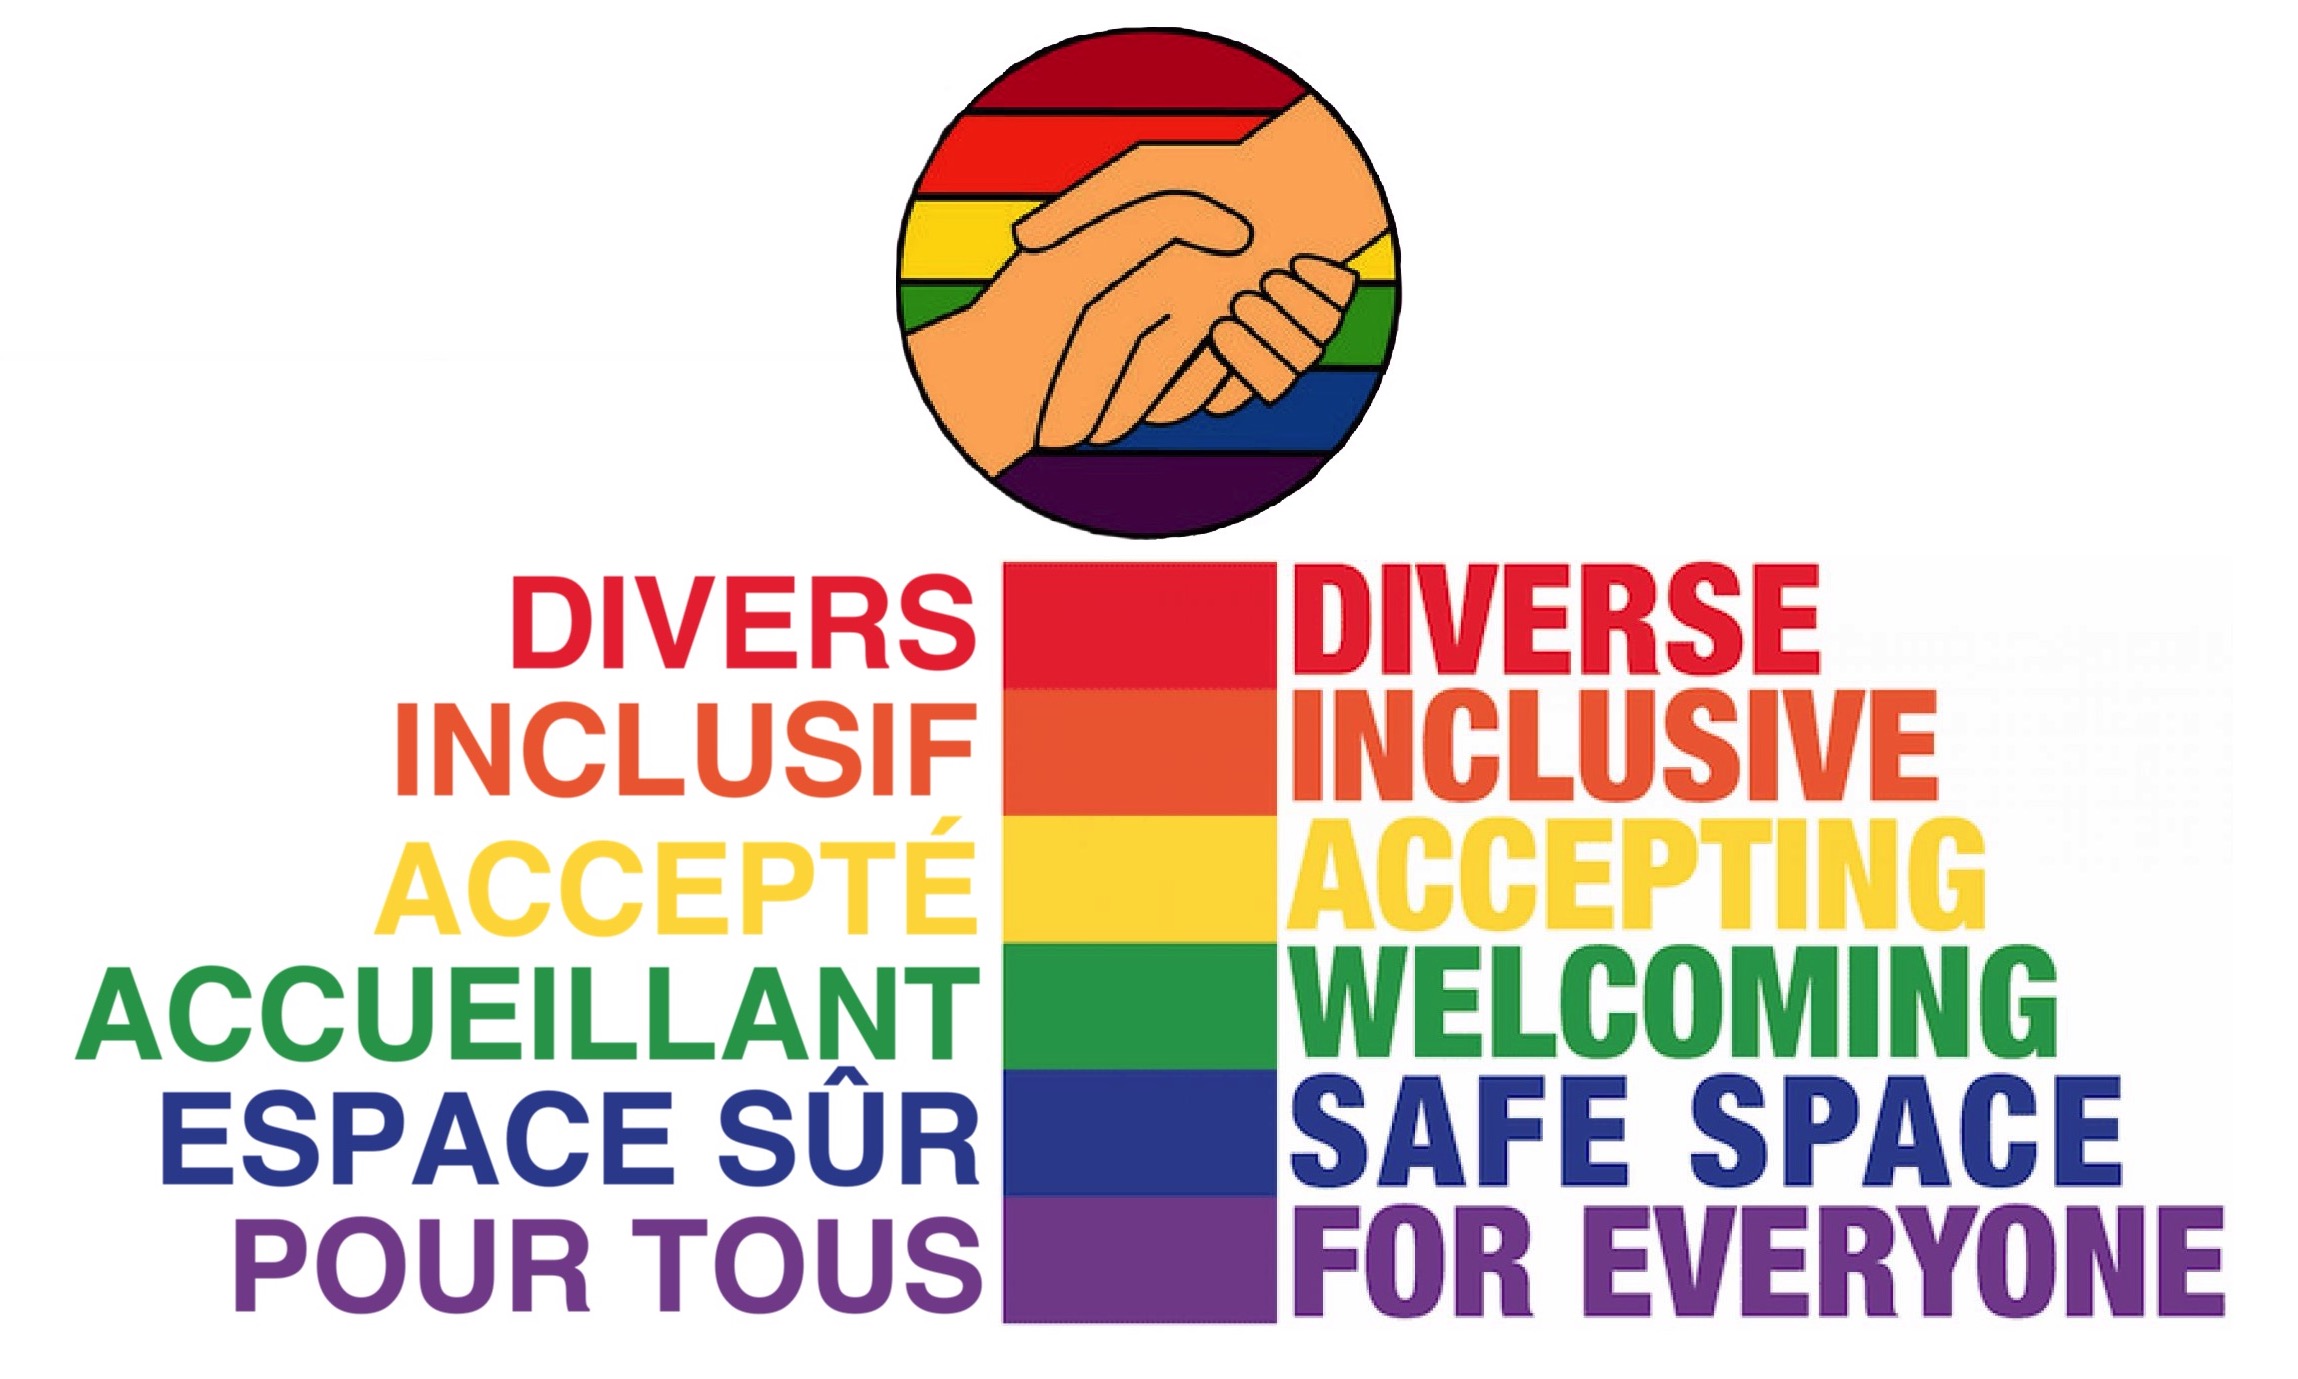 Couleurs LGBTQ+ dans un cercle dans lequel deux mains se donne une poignée de main.
En dessous couleur LGBTQ+ avec les mots. 
Divers
Inclusif
Accepté
Accueillant
Espace sûr
Pour tous.
.LGBTQ+.